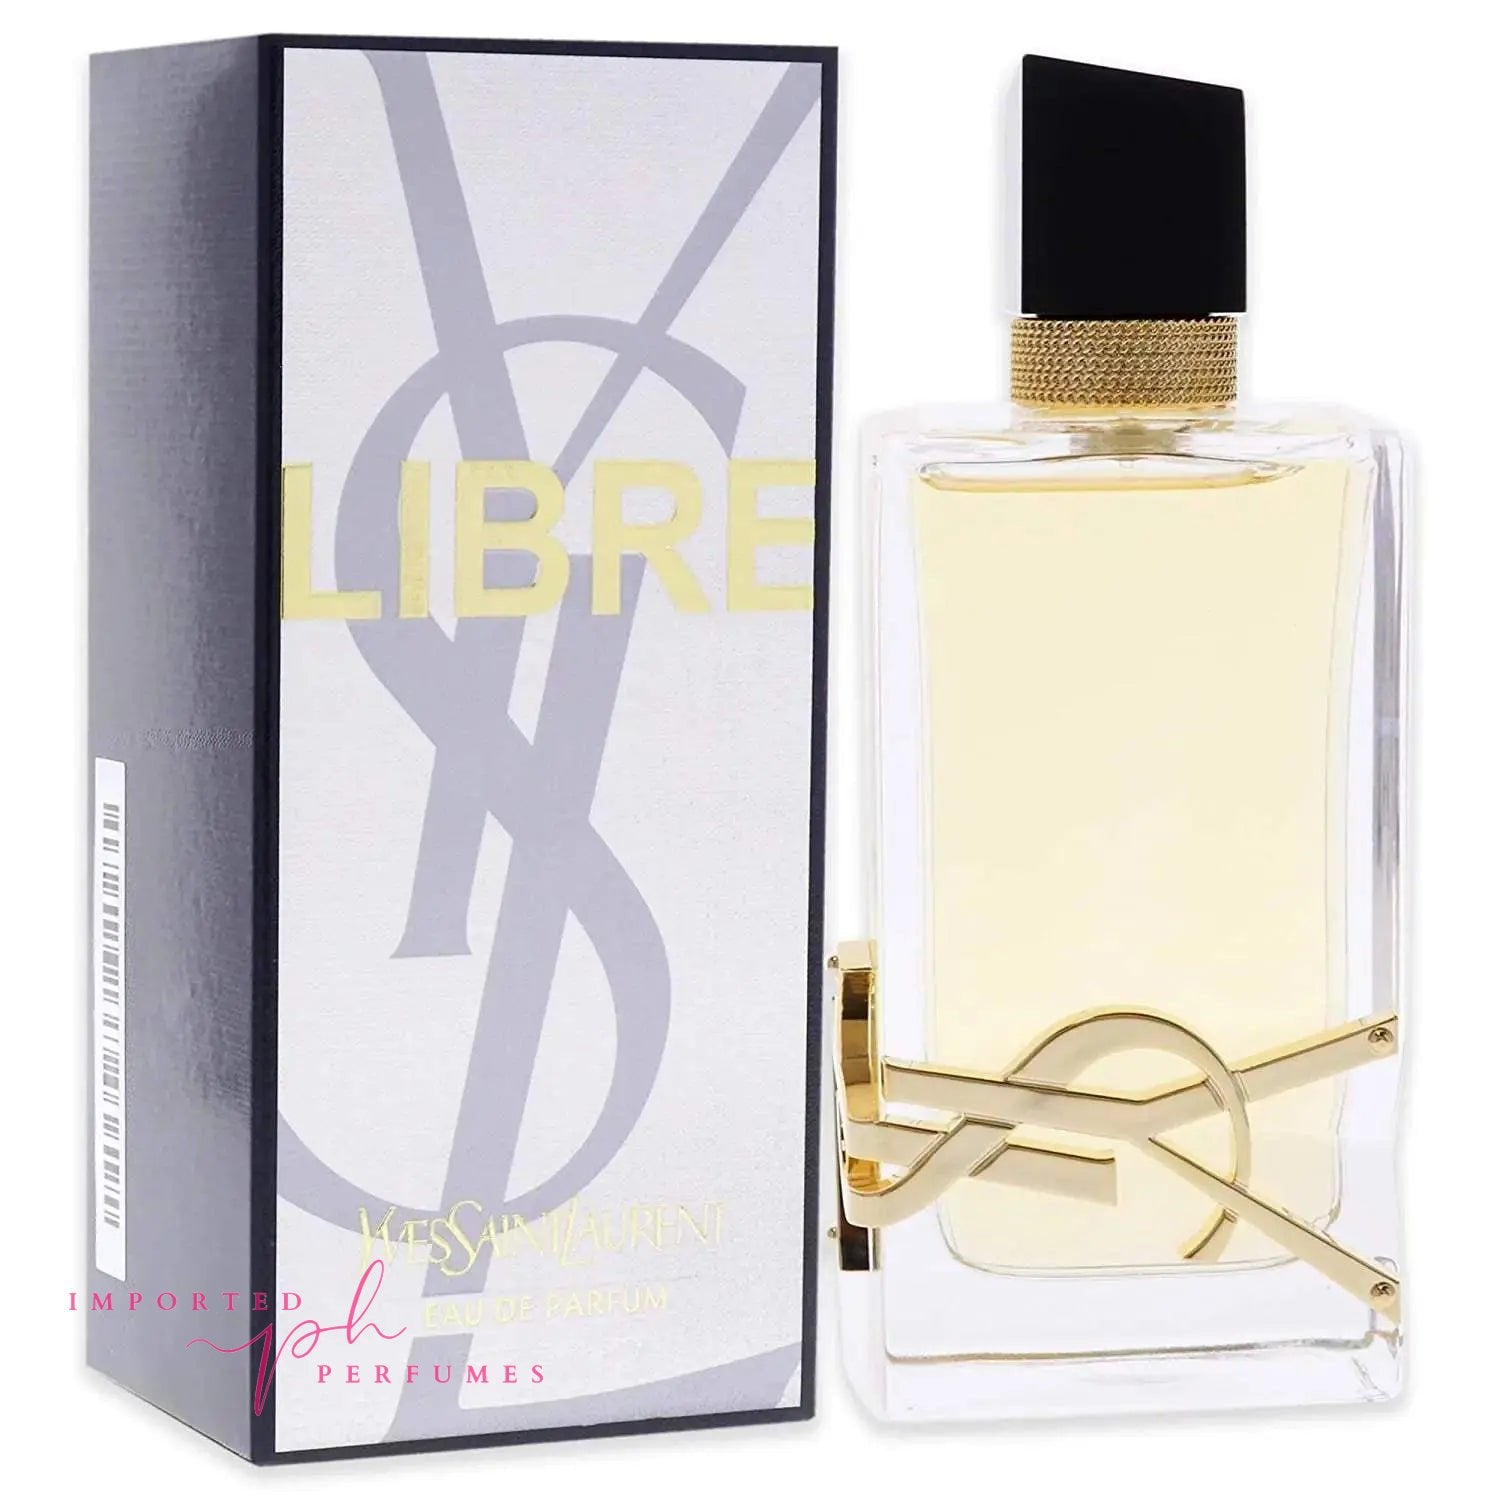 [TESTER] YSL - Yves Saint Laurent Libre Women Eau De Parfum 90ml Imported Perfumes Co